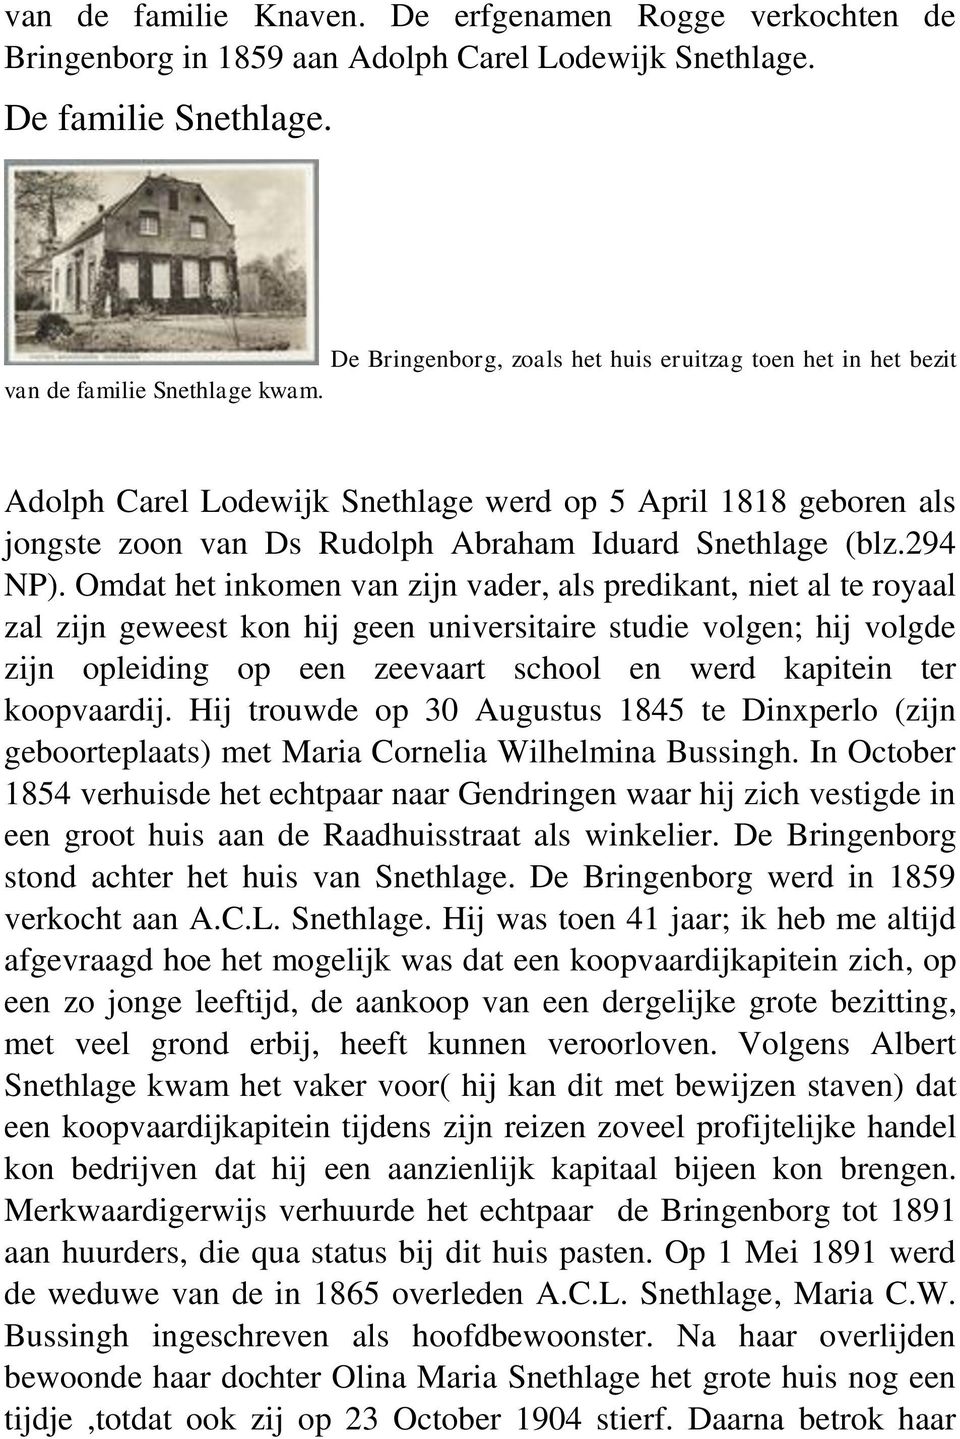 Adolph Carel Lodewijk Snethlage werd op 5 April 1818 geboren als jongste zoon van Ds Rudolph Abraham Iduard Snethlage (blz.294 NP).